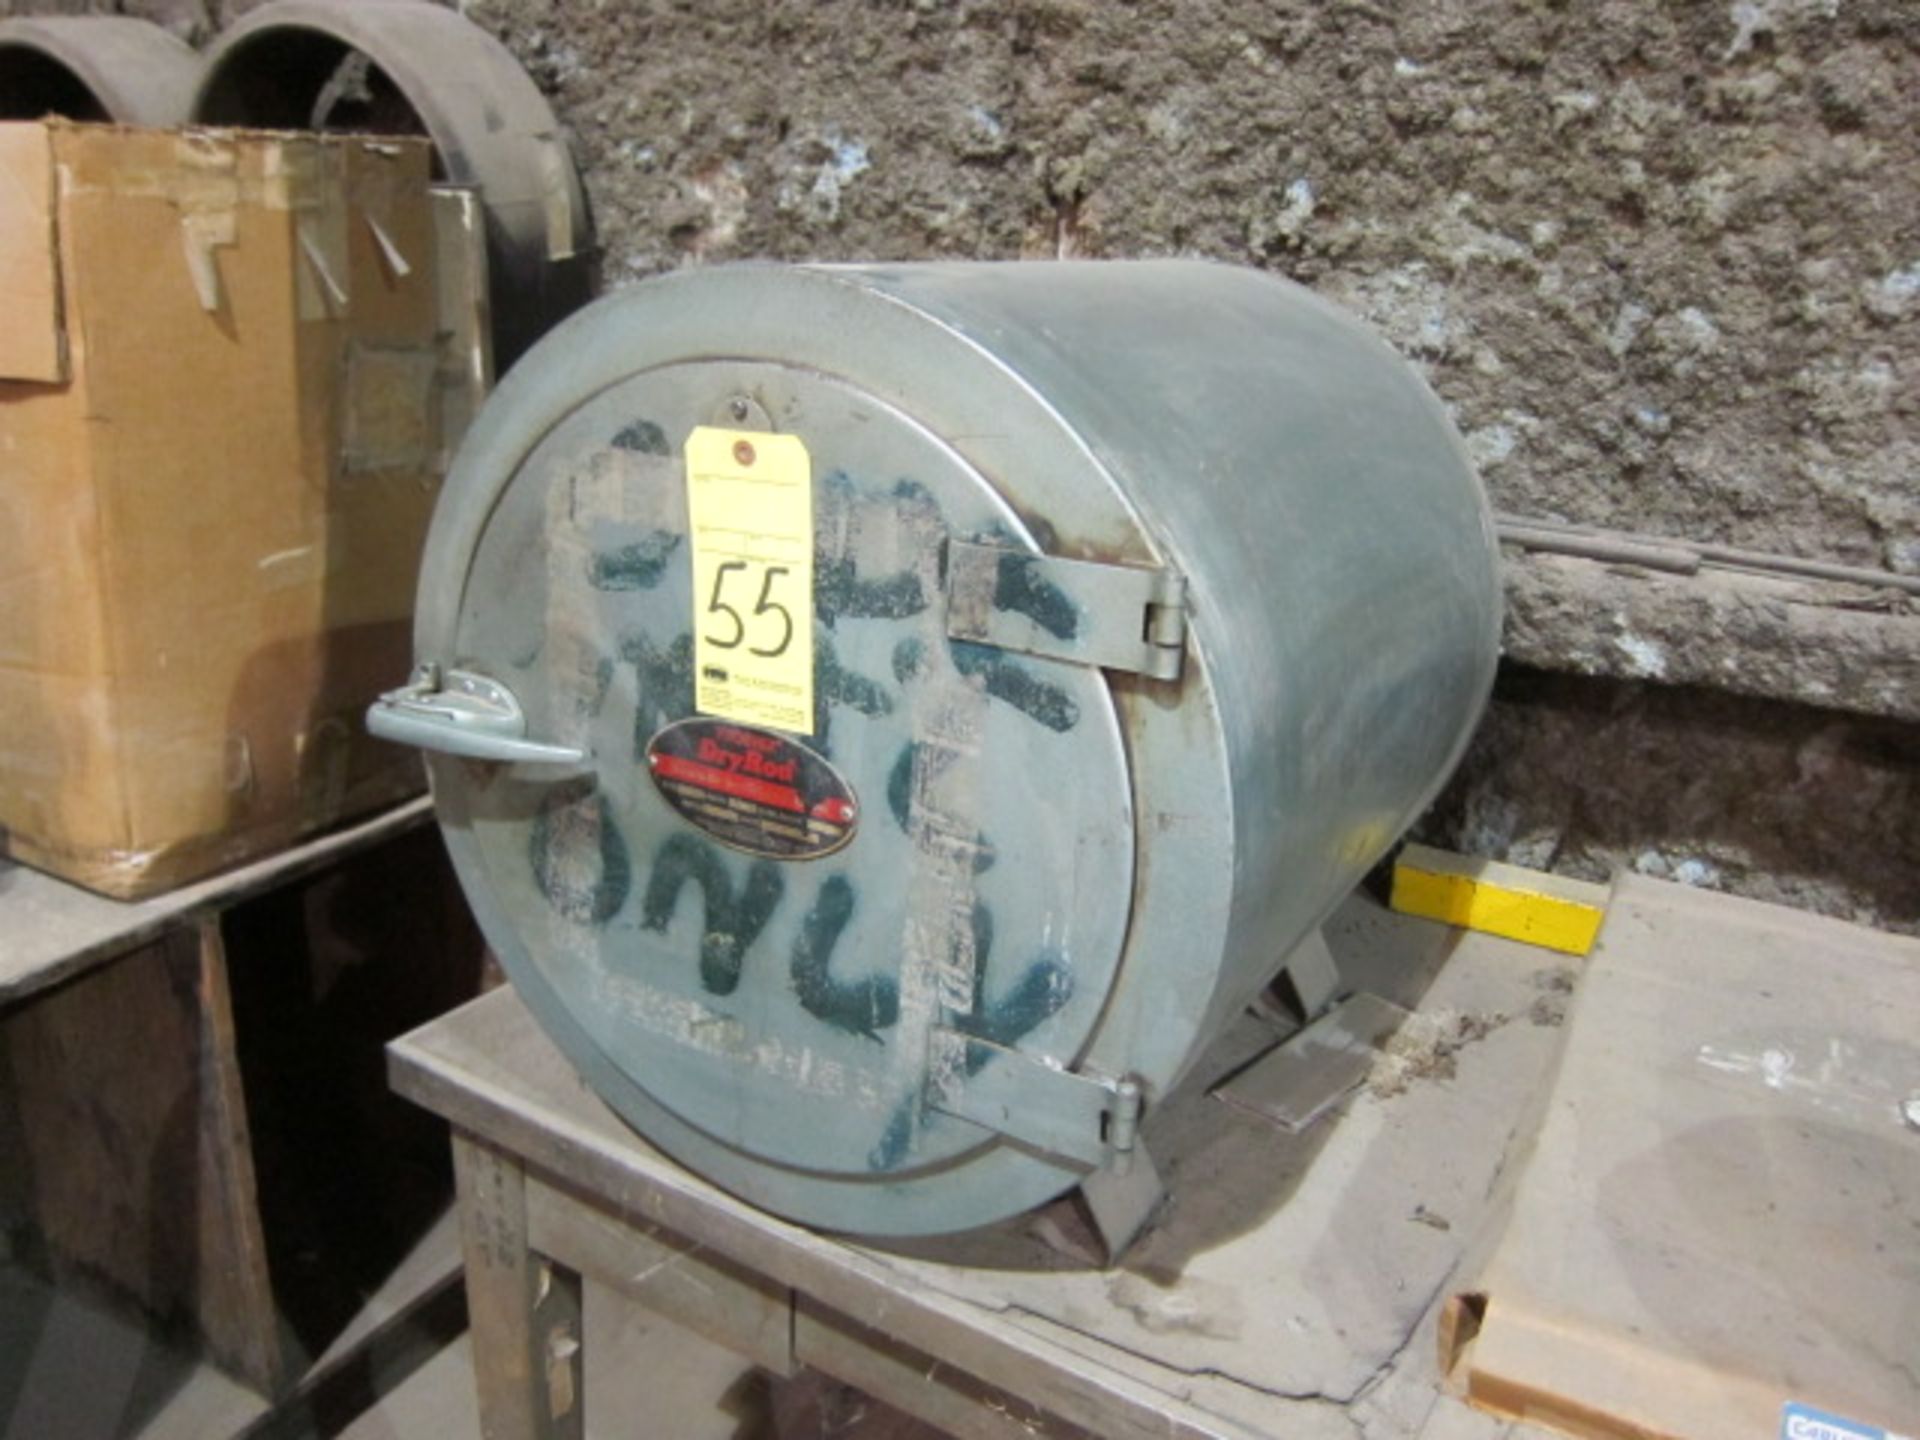 DRY ROD ELECTRODE OVEN, PHOENIX MDL. 1513, Type 300, 1,000 watt